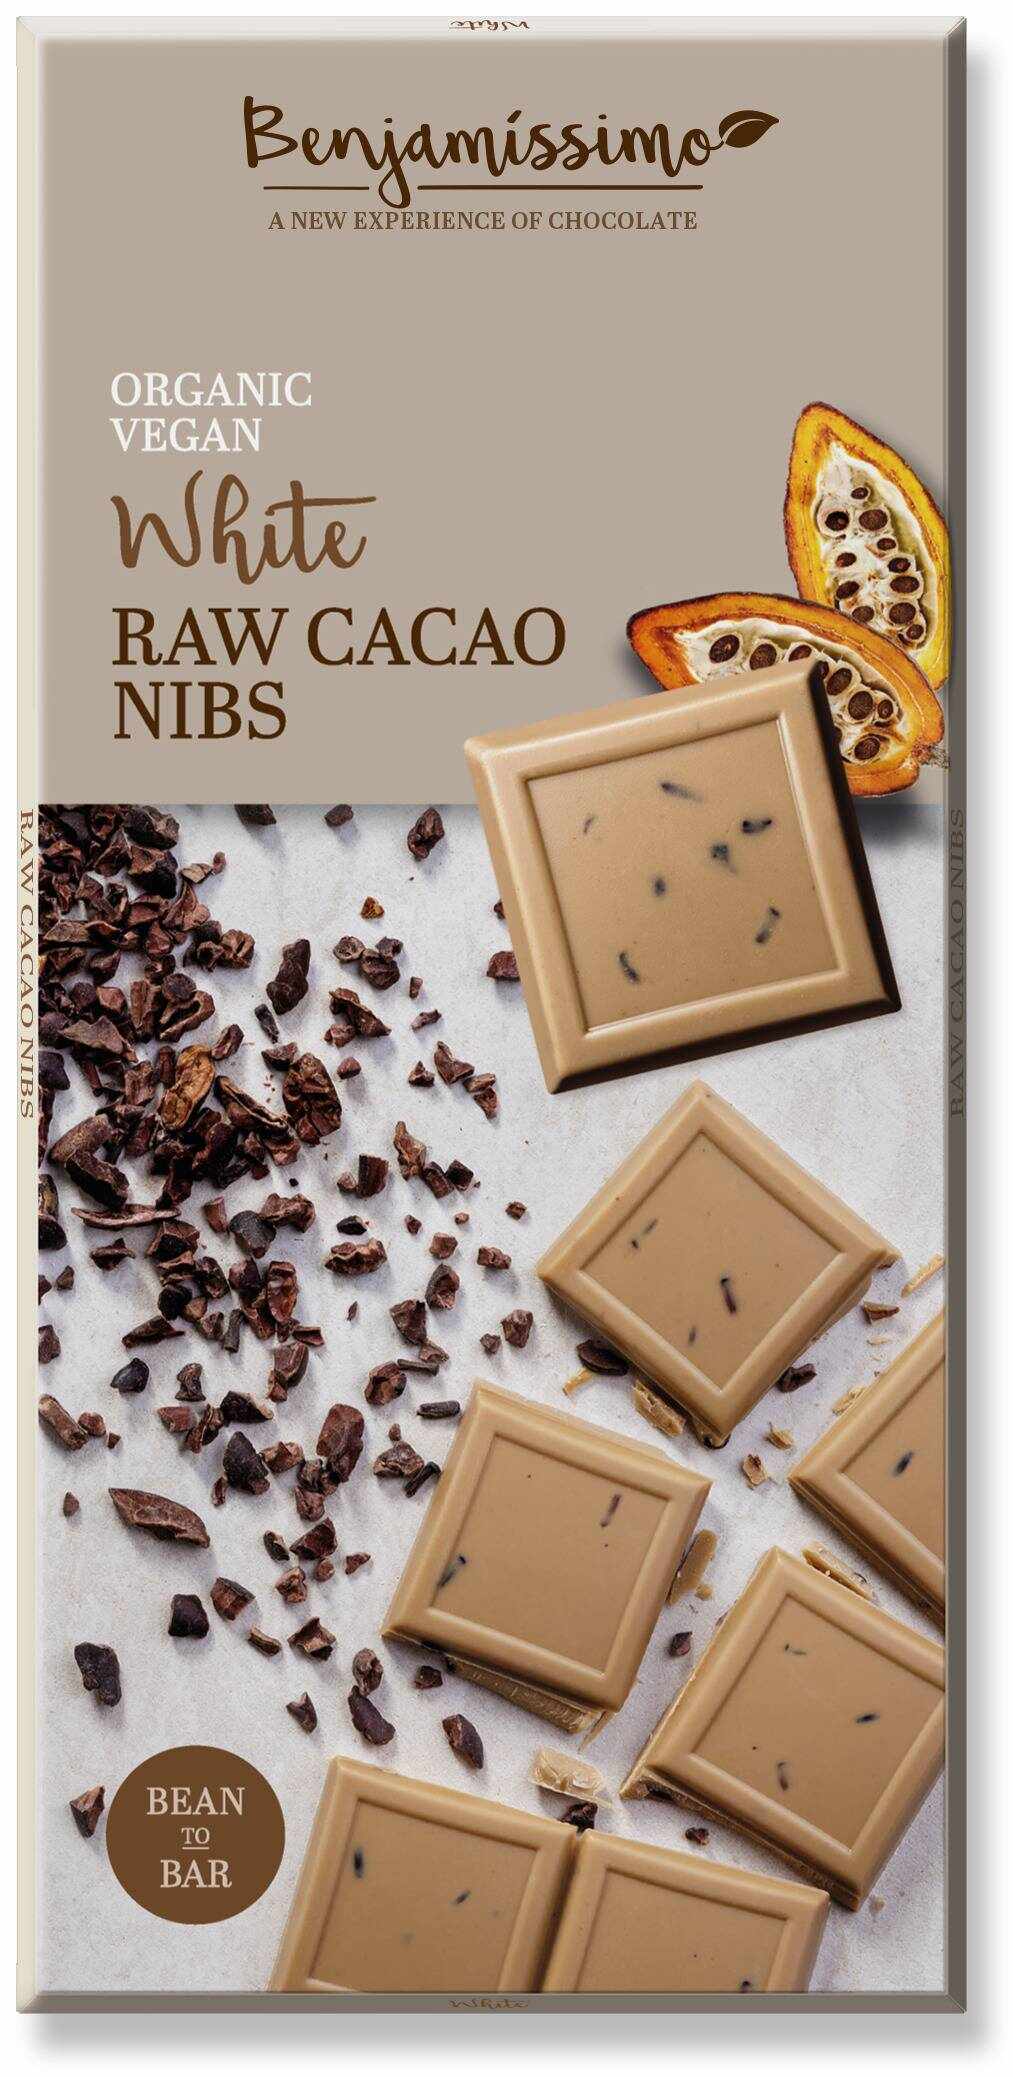 Ciocolata alba cu cacao nibs, eco-bio, 70g - Benjamissimo